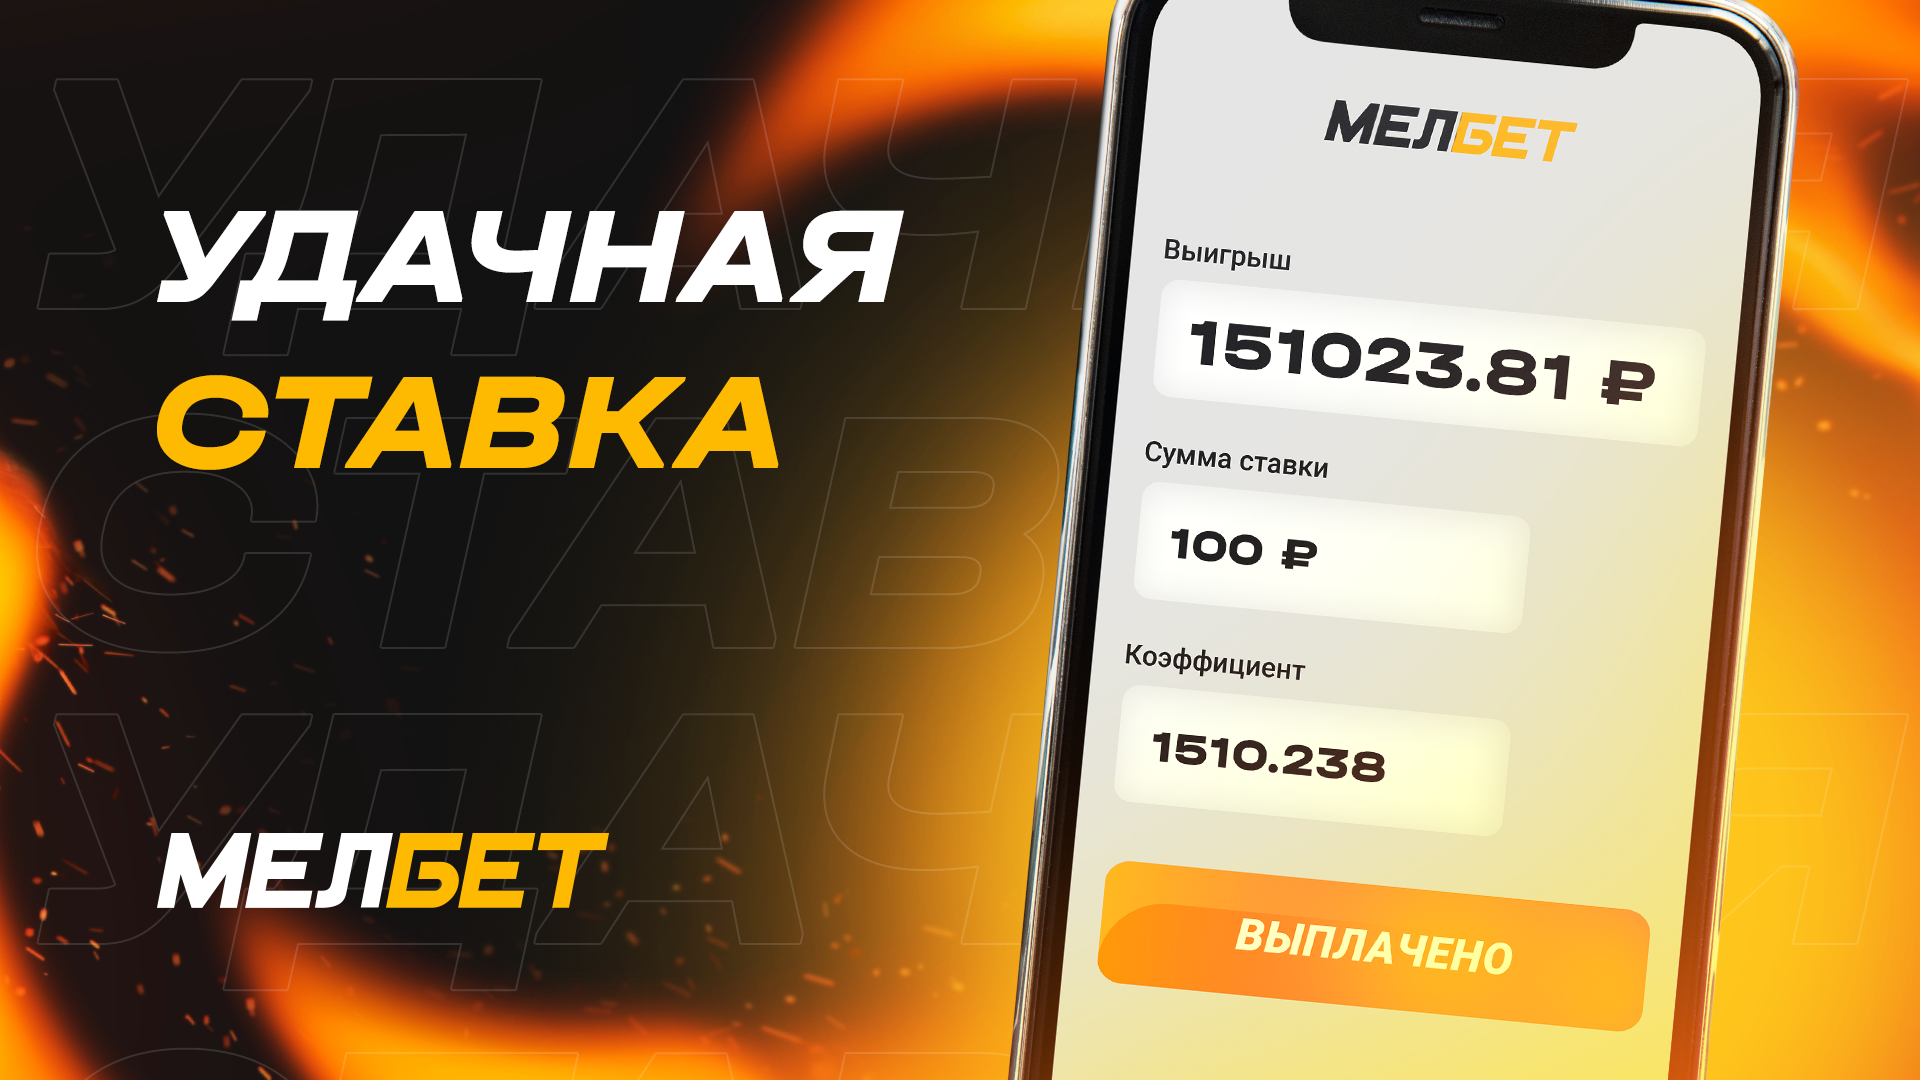 Игрок Мелбет сорвал куш: 100 рублей превратились в 151,023.81 благодаря удачной ставке!